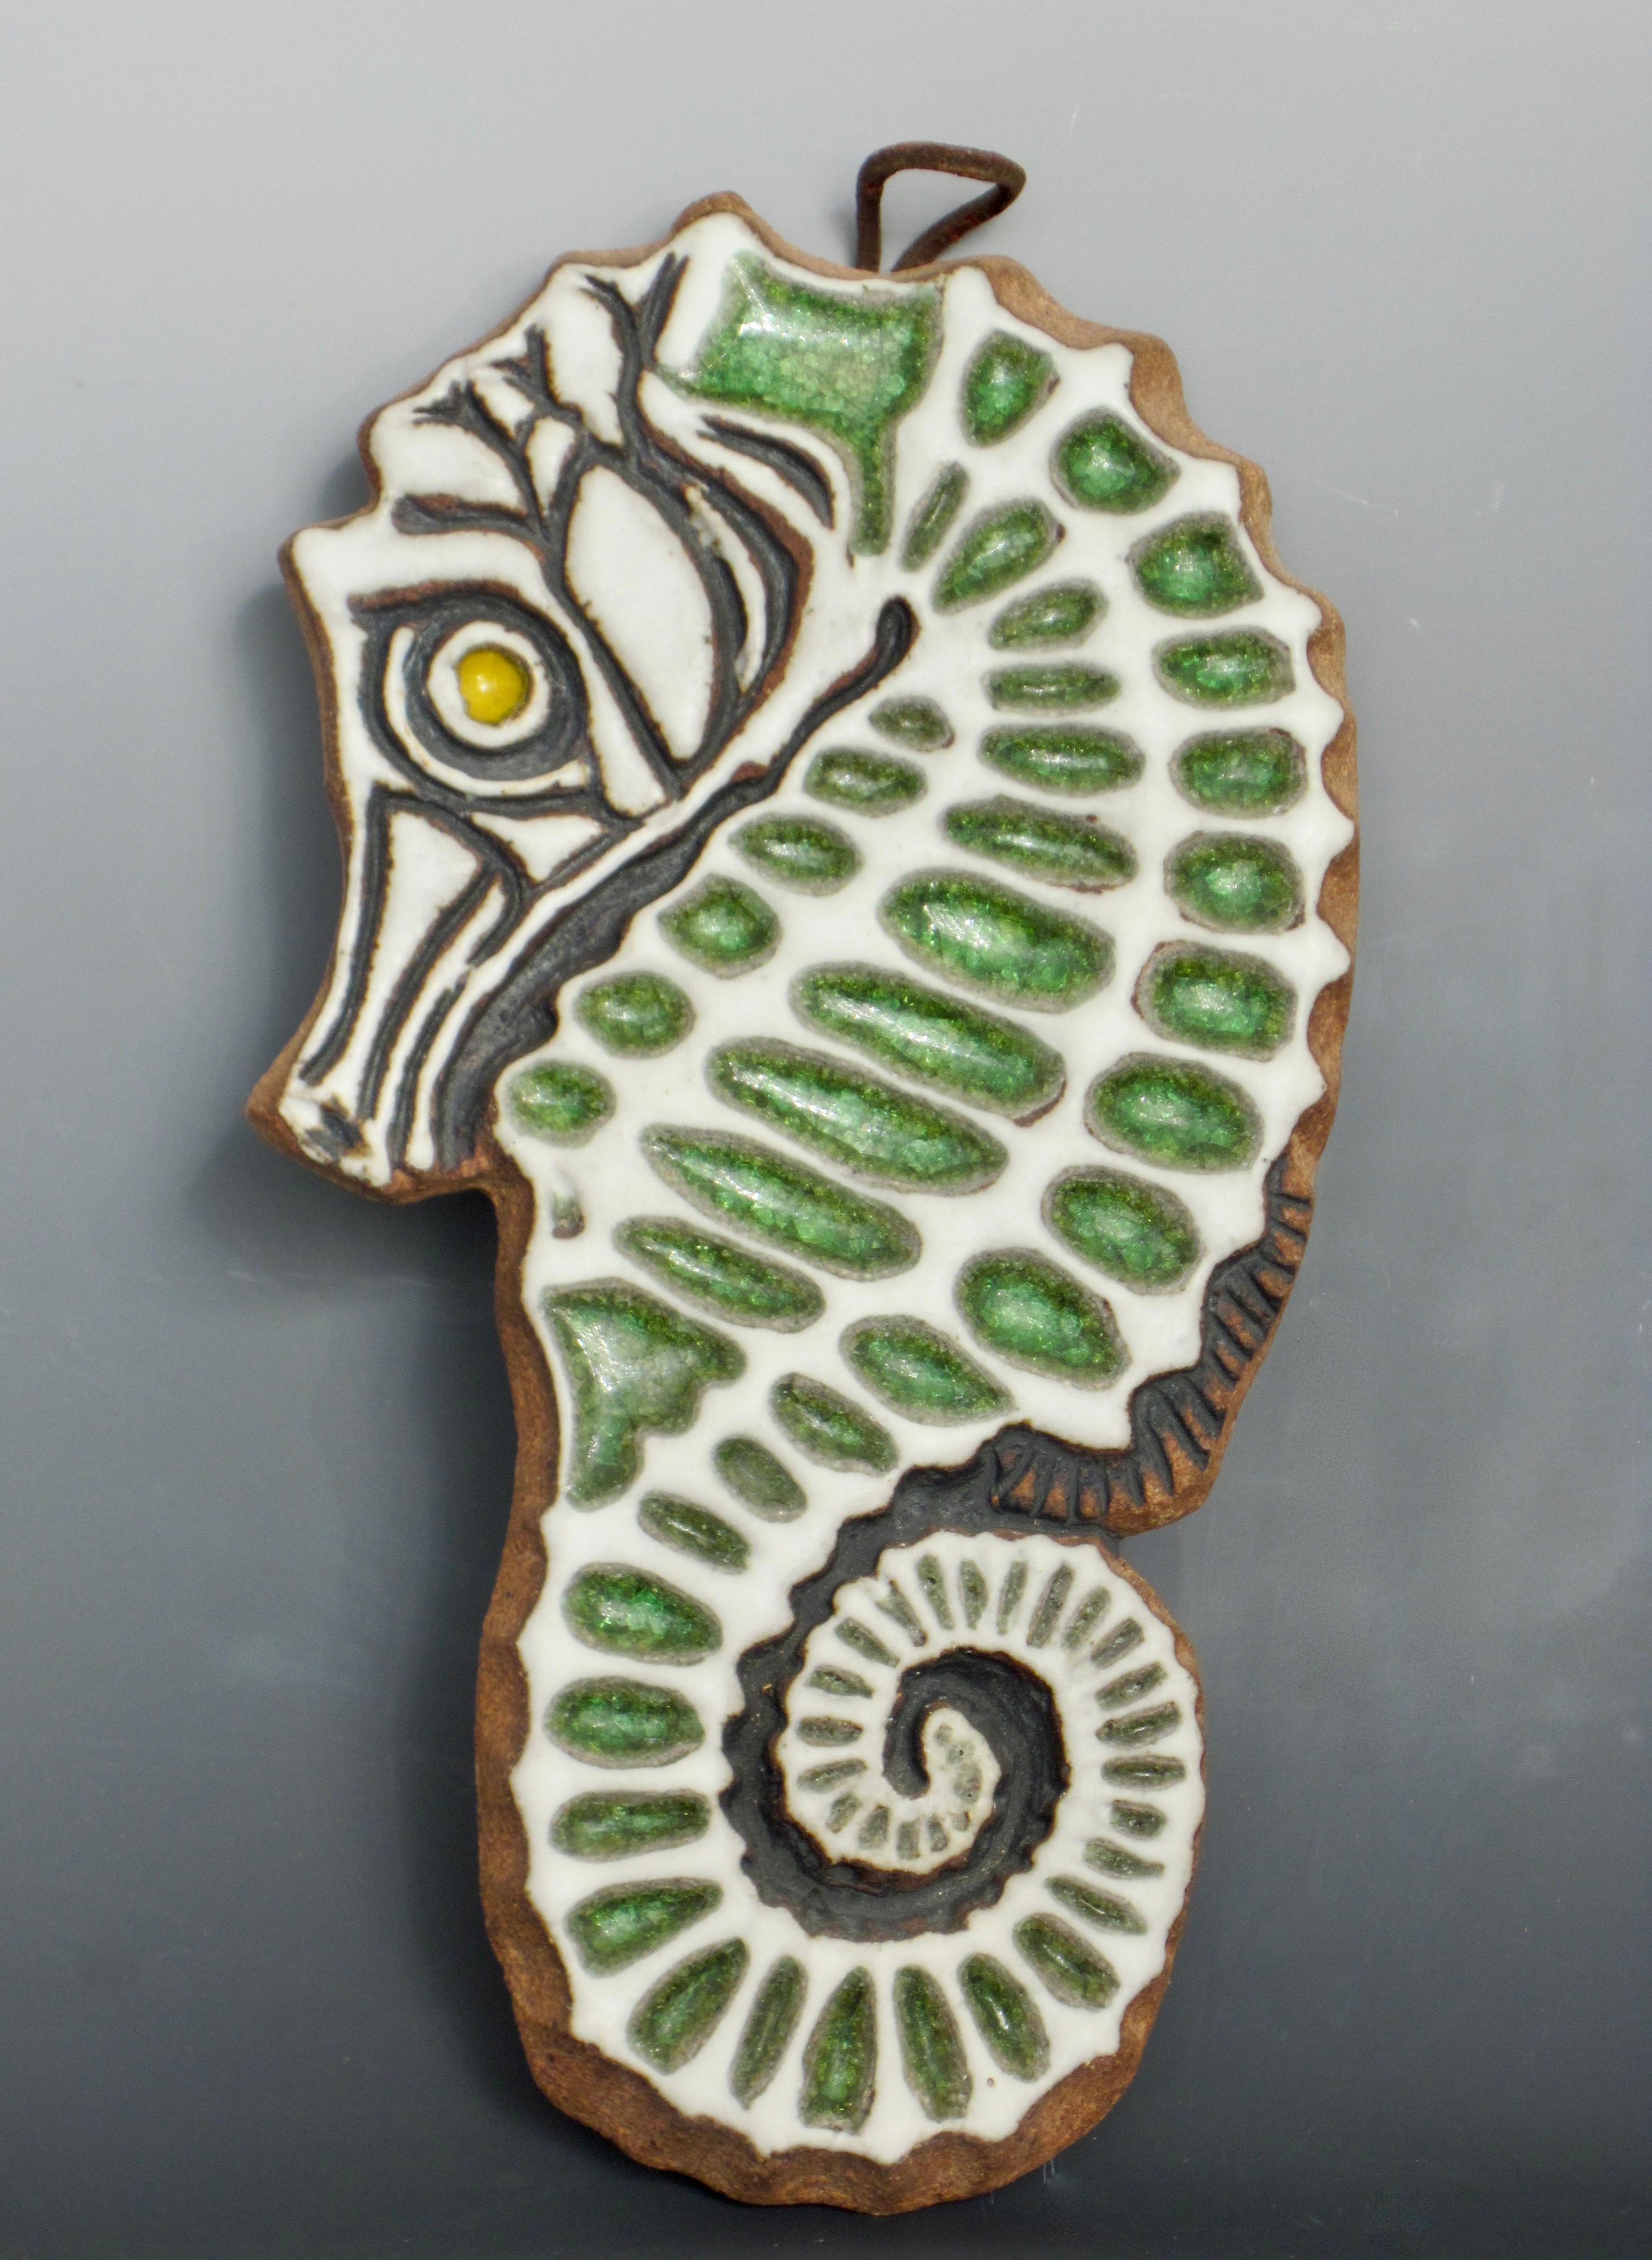 Sculpture d'hippocampe en terre cuite réalisée à la main dans les années 1970 par Victoria Littlejohn, potière californienne. Une pièce précoce et peu commune de l'artiste. Support en liège avec boucle en cuir pour accrochage mural. Très bon état